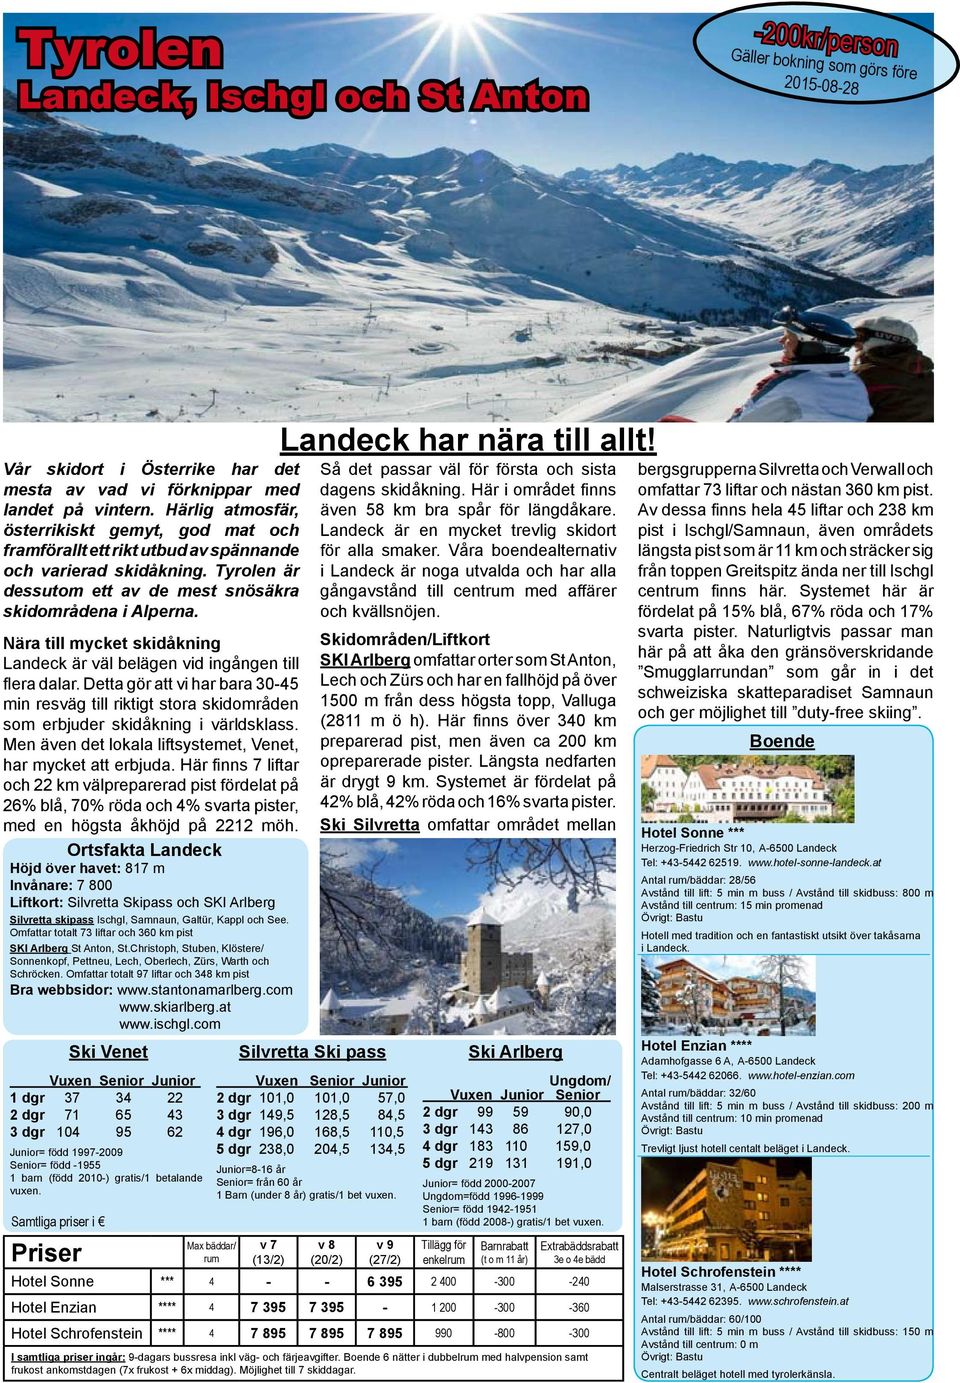 Nära till mycket skidåkning Landeck är väl belägen vid ingången till flera dalar. Detta gör att vi har bara 30-45 min resväg till riktigt stora skidområden som erbjuder skidåkning i världsklass.